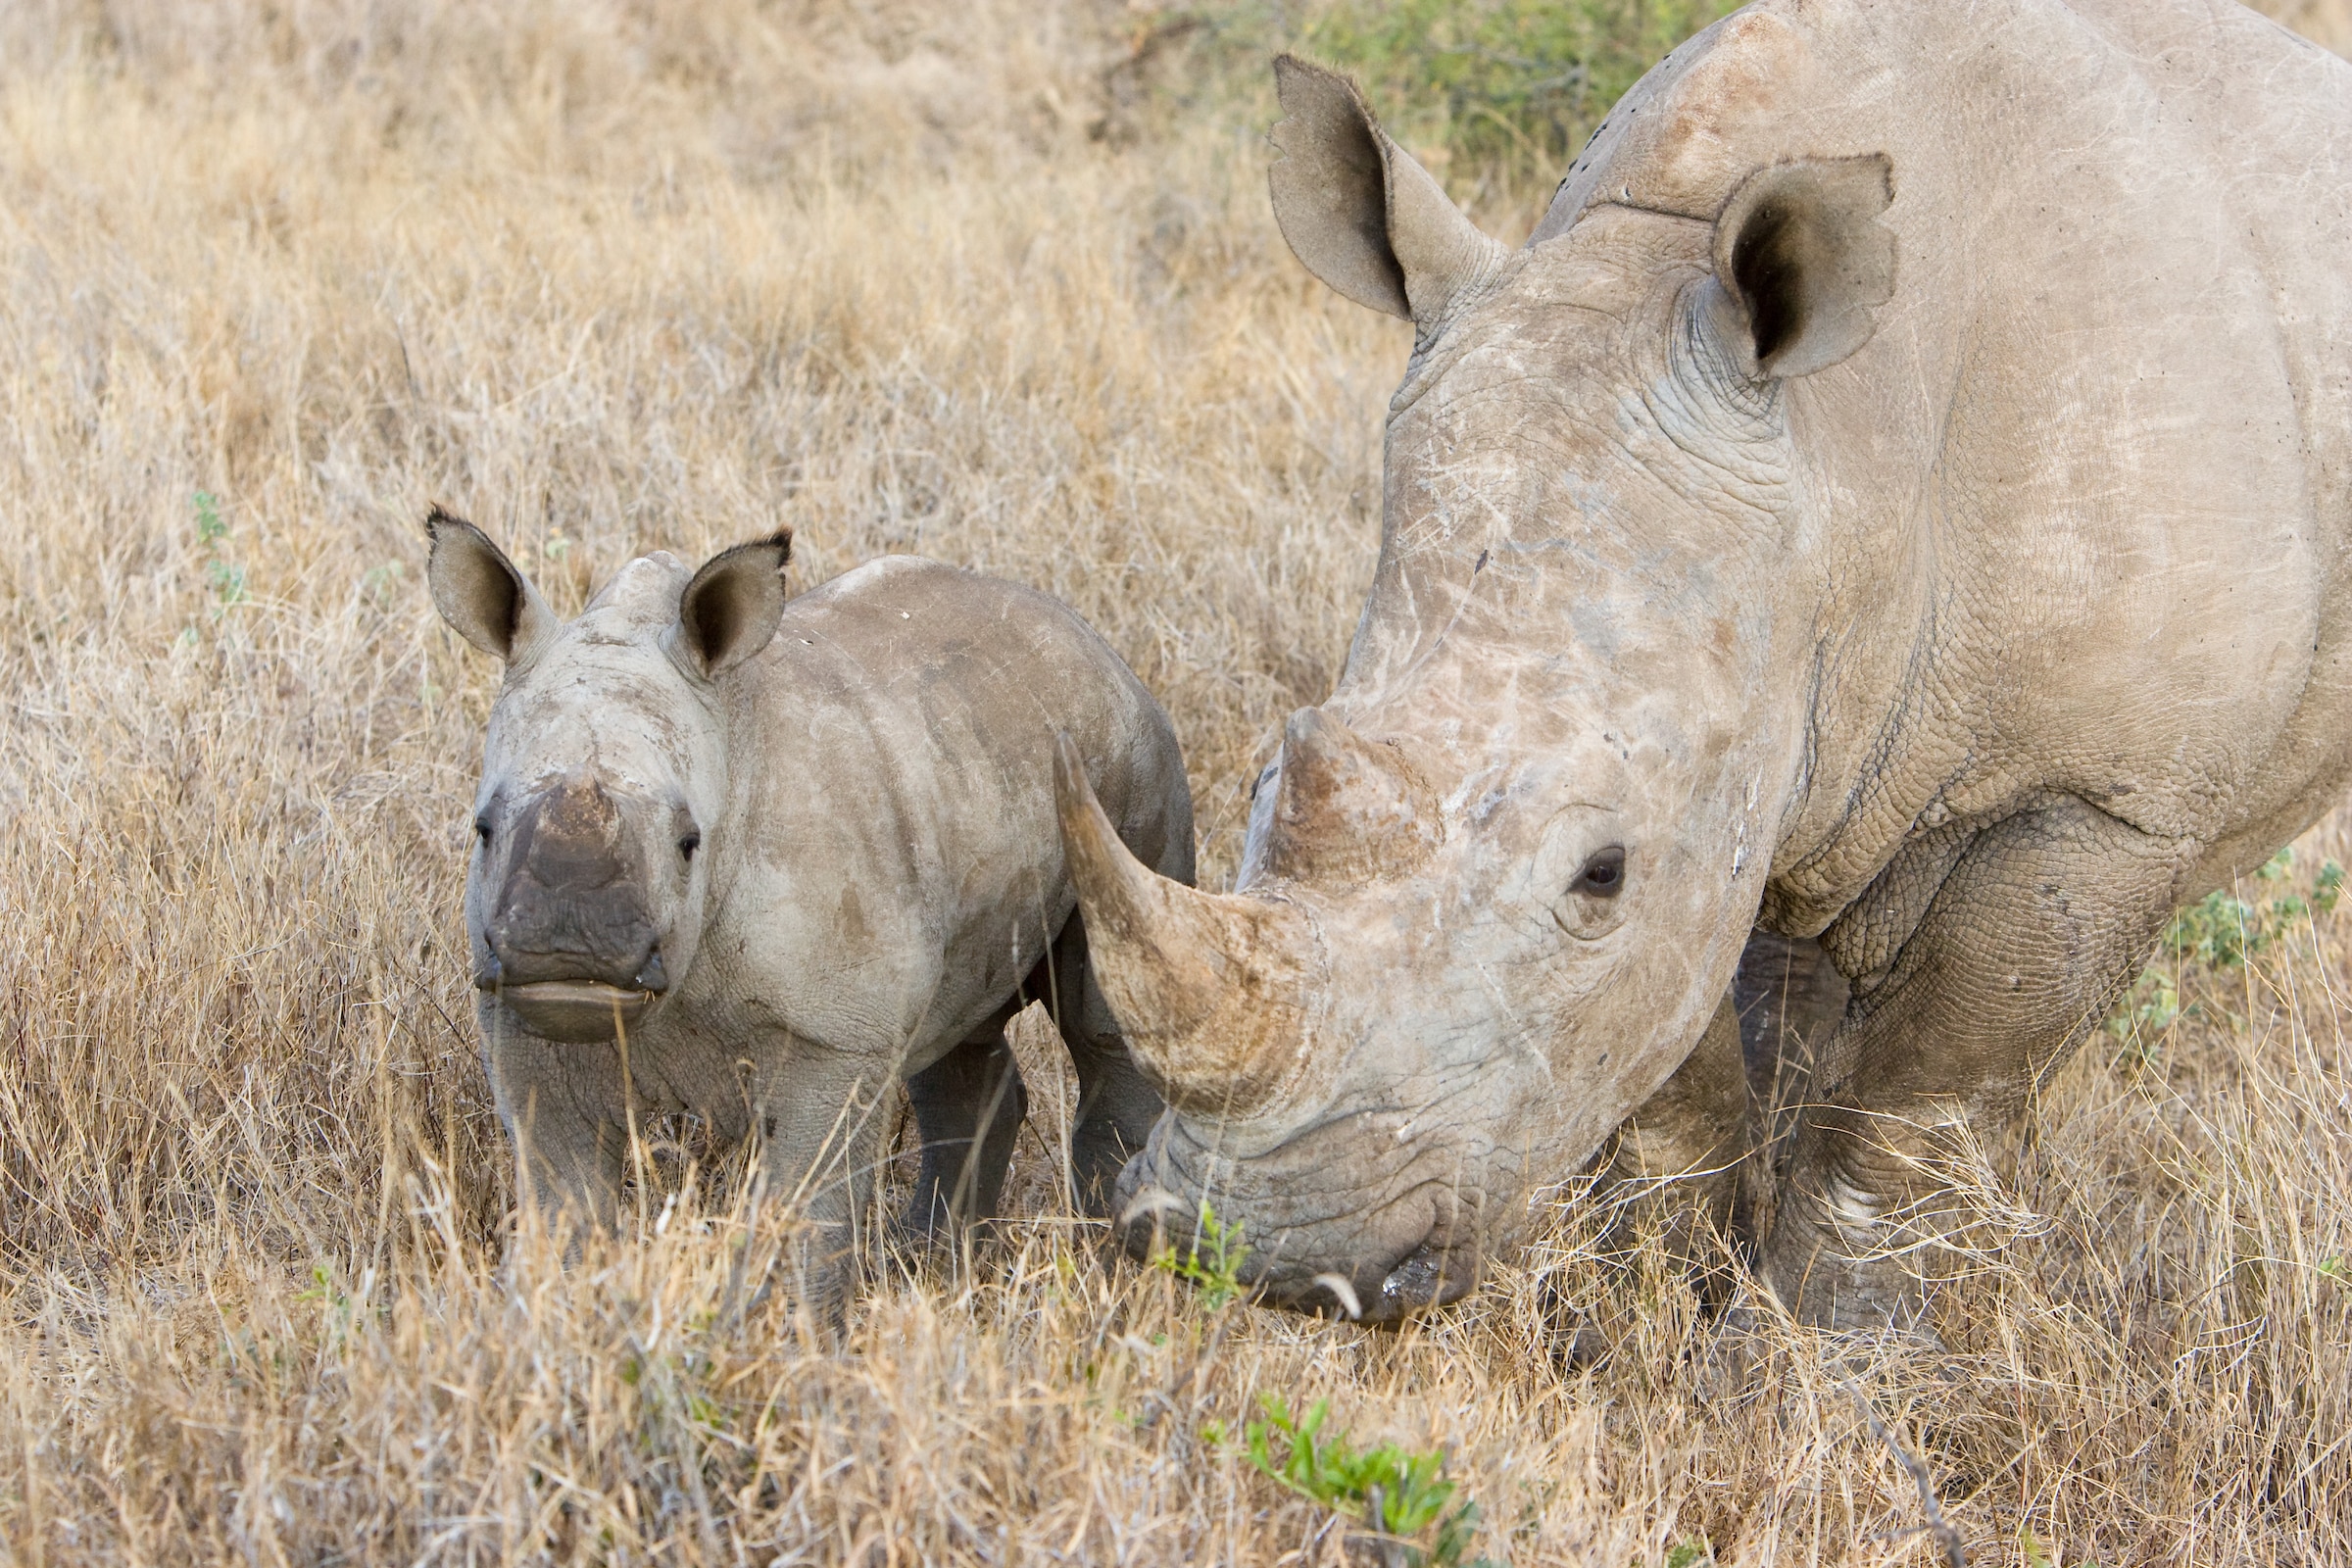 White rhino mother and calf / baby in Kenya